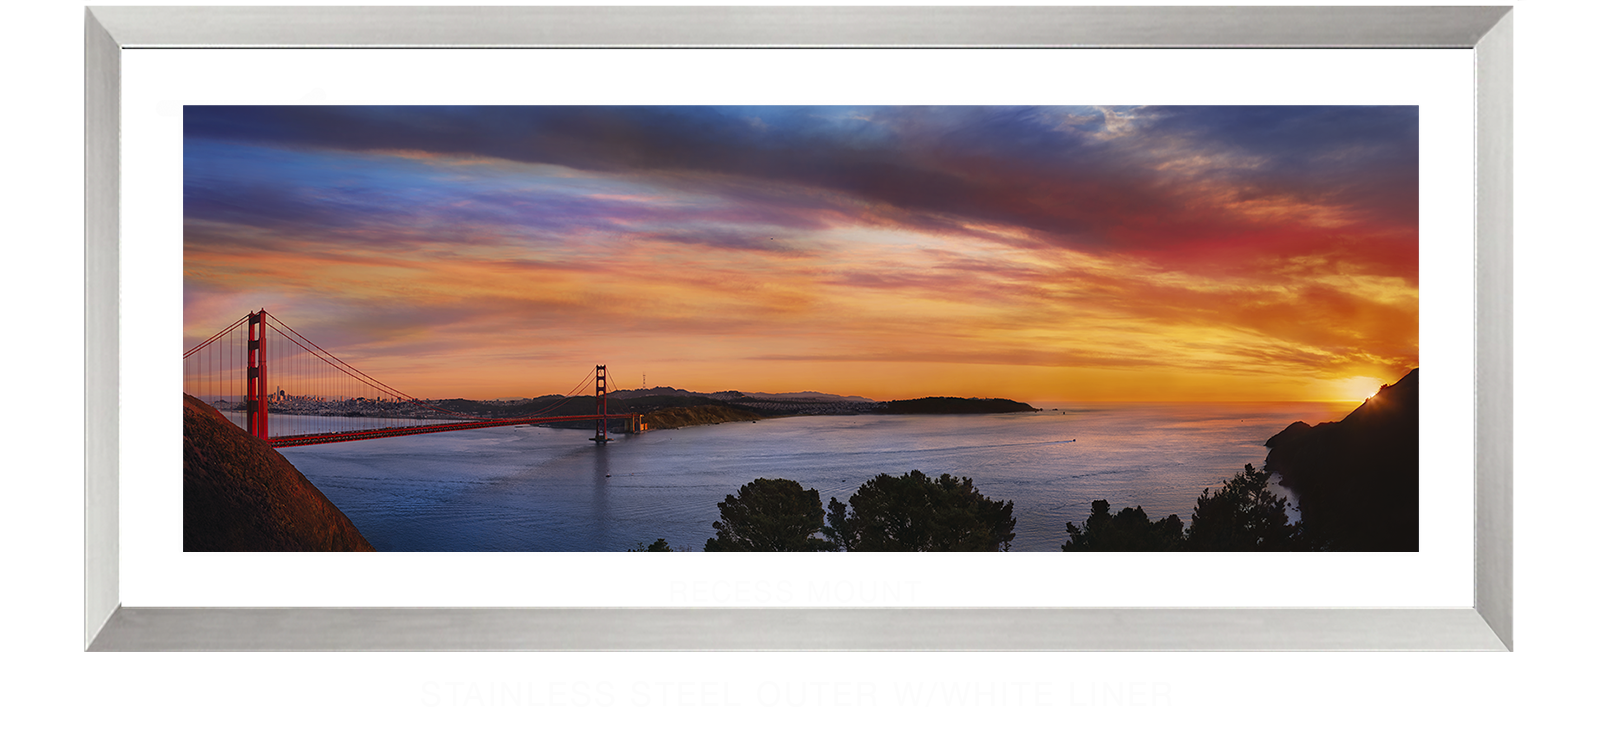 3GoldenGateBridge Stainless Steel Outer w_Wht Liner T